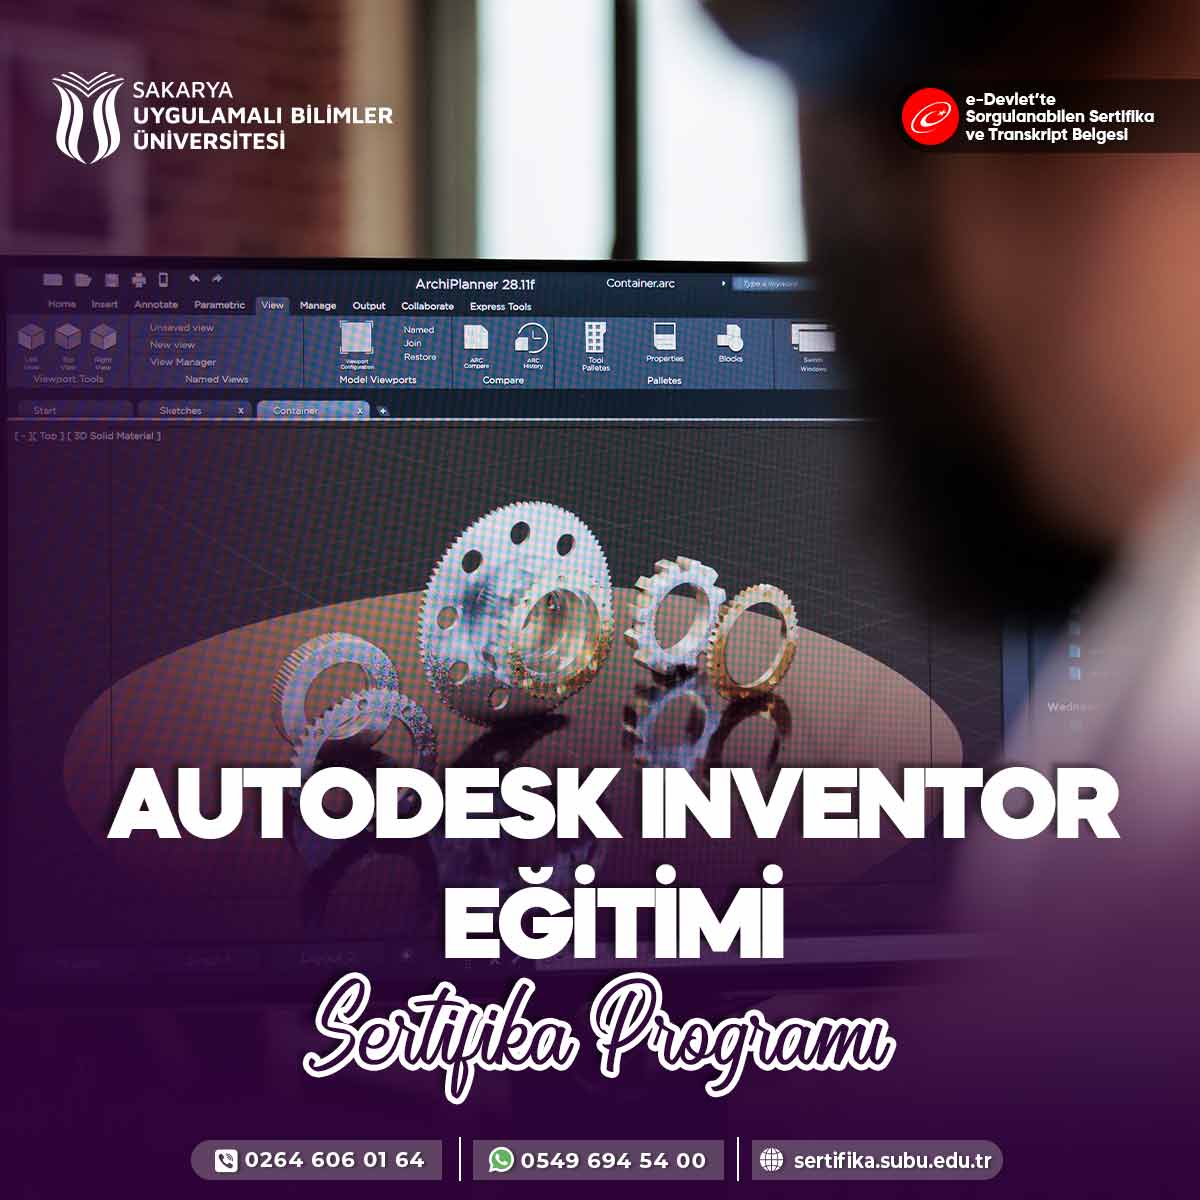 Autodesk Inventor Eğitimi Sertifika Programı